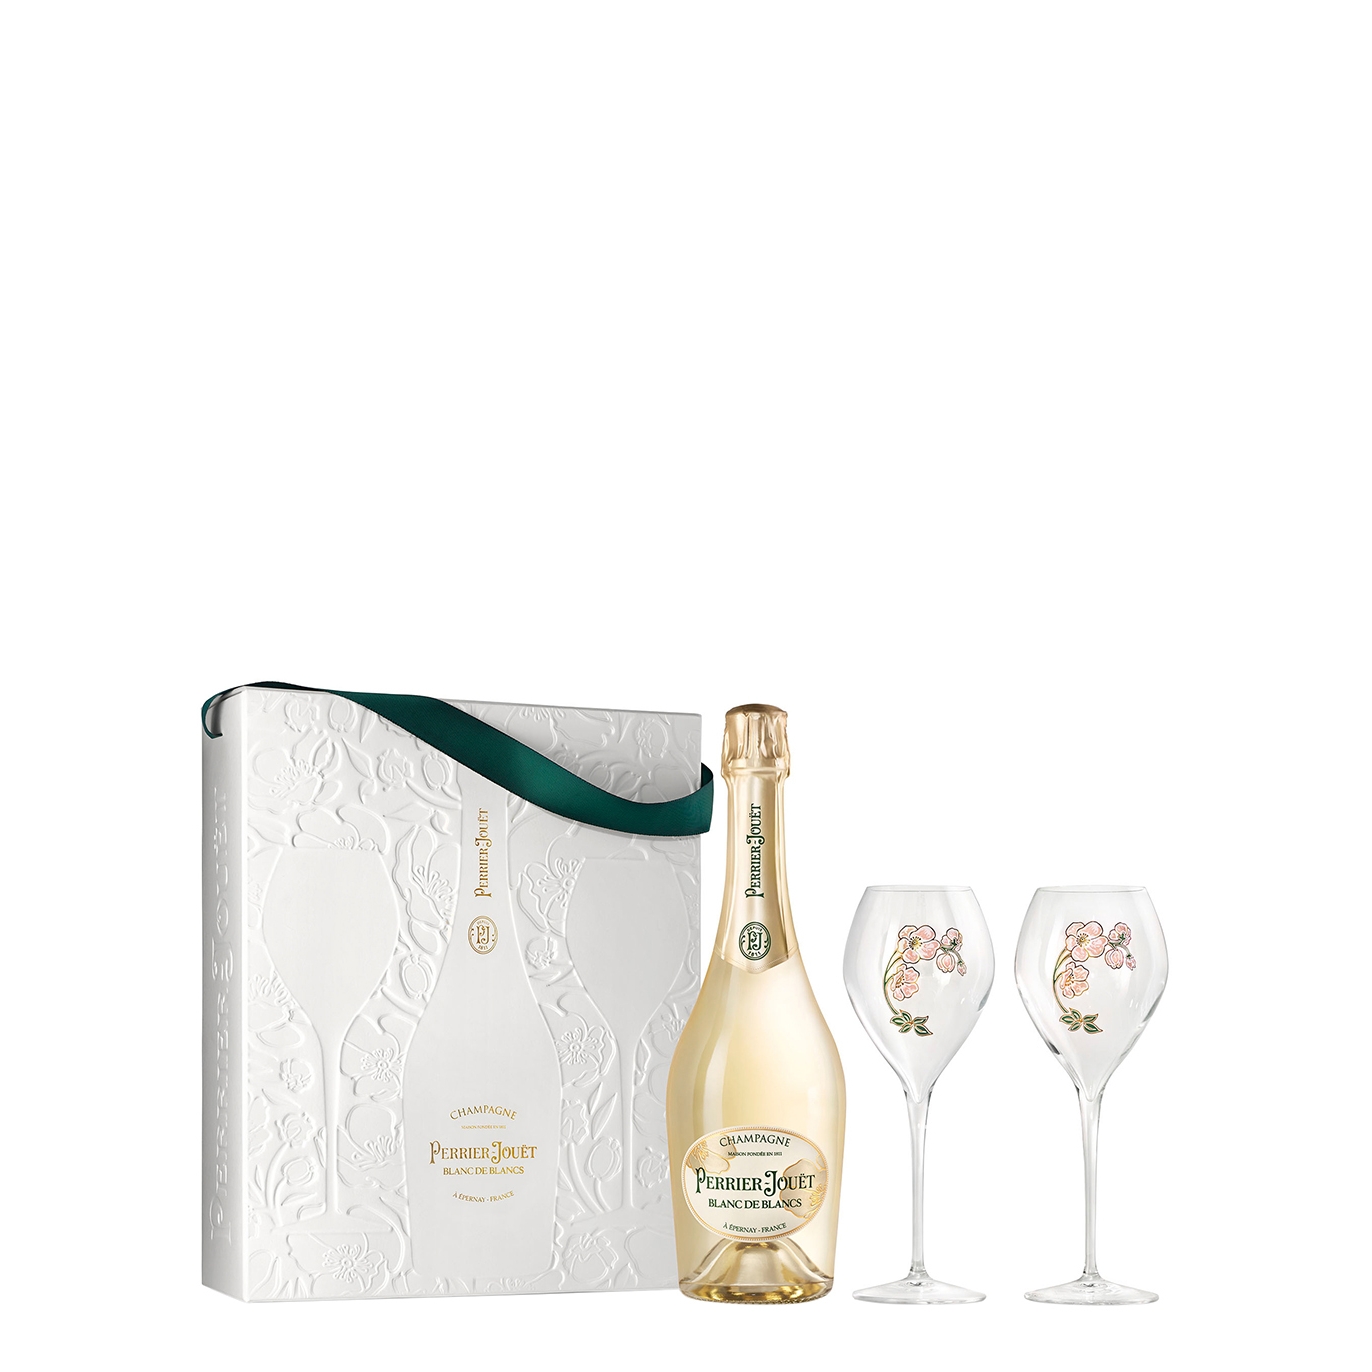 Perrier-Jouët Blanc de Blancs Champagne NV & Flutes Gift Set, France Sparkling Wine